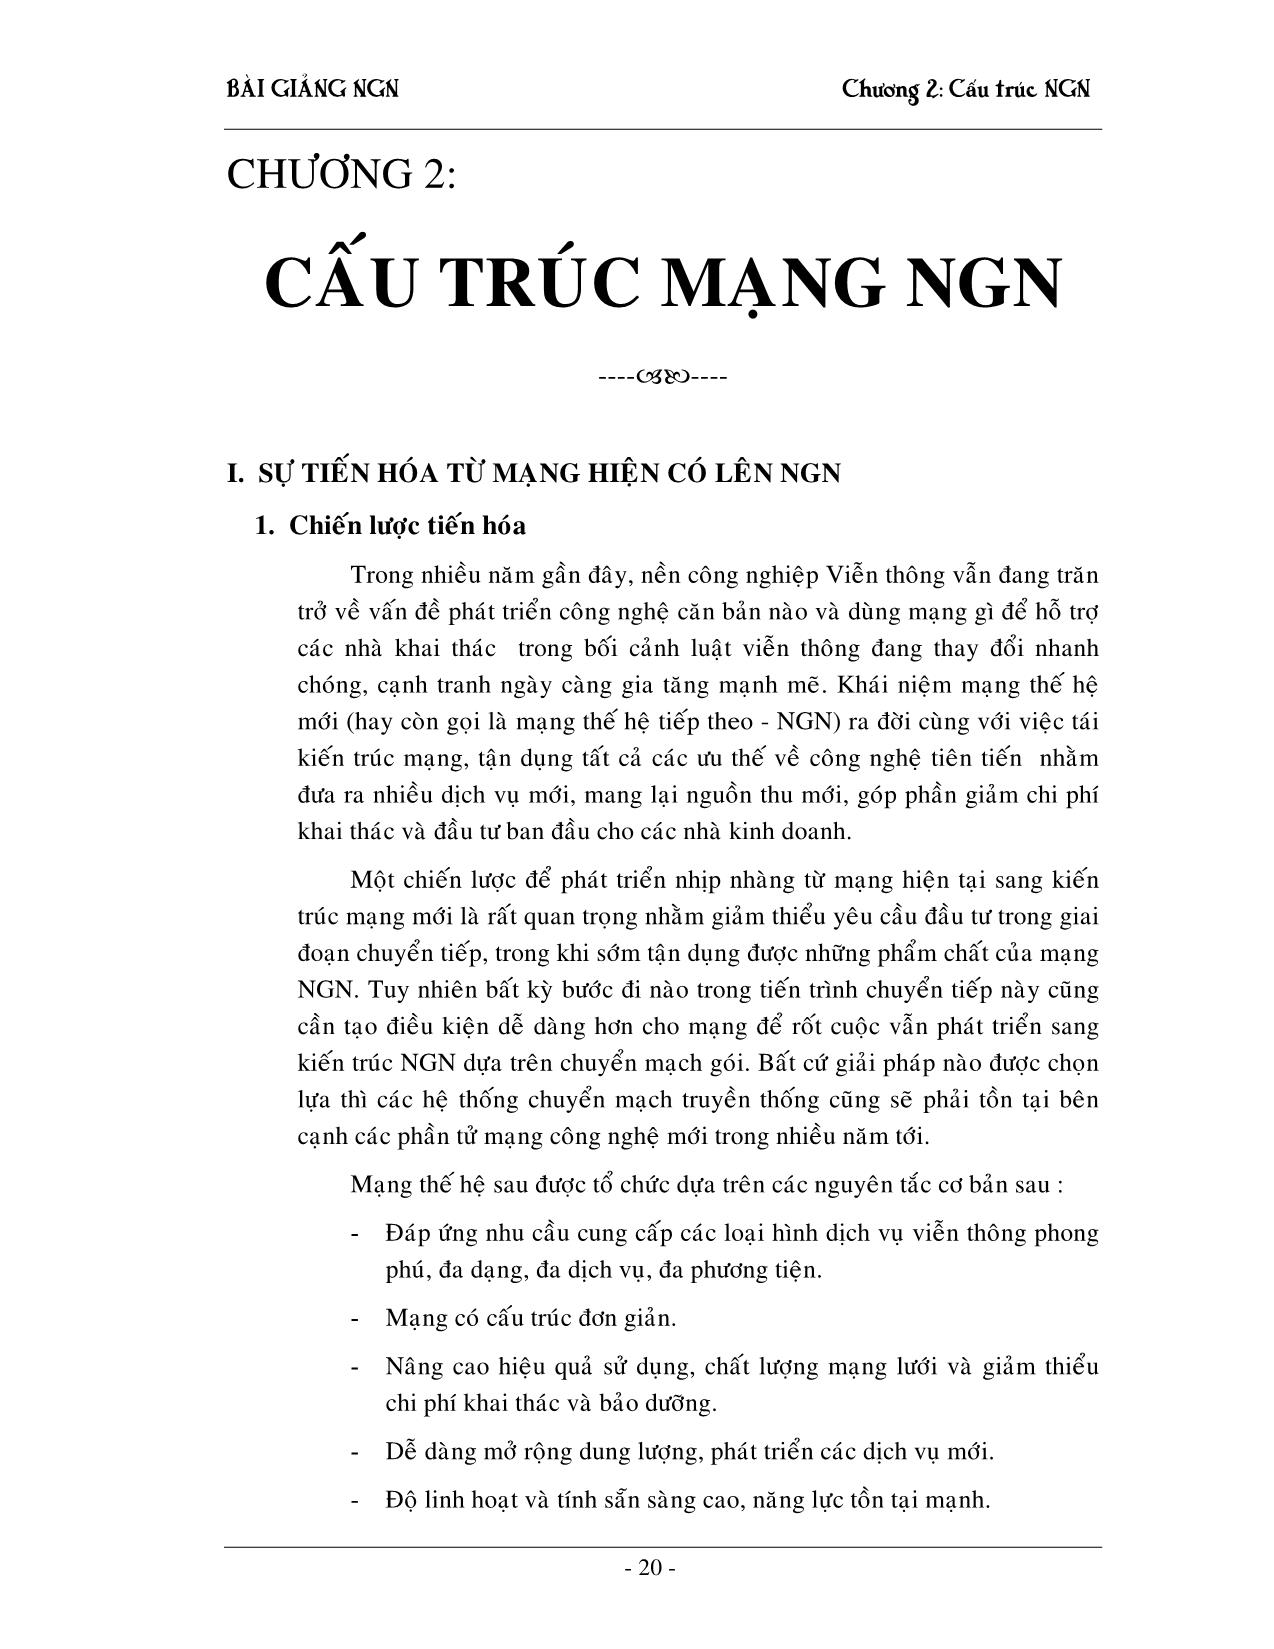 Giáo trình NGN - Chương 2: Cấu trúc mạng NGN trang 1